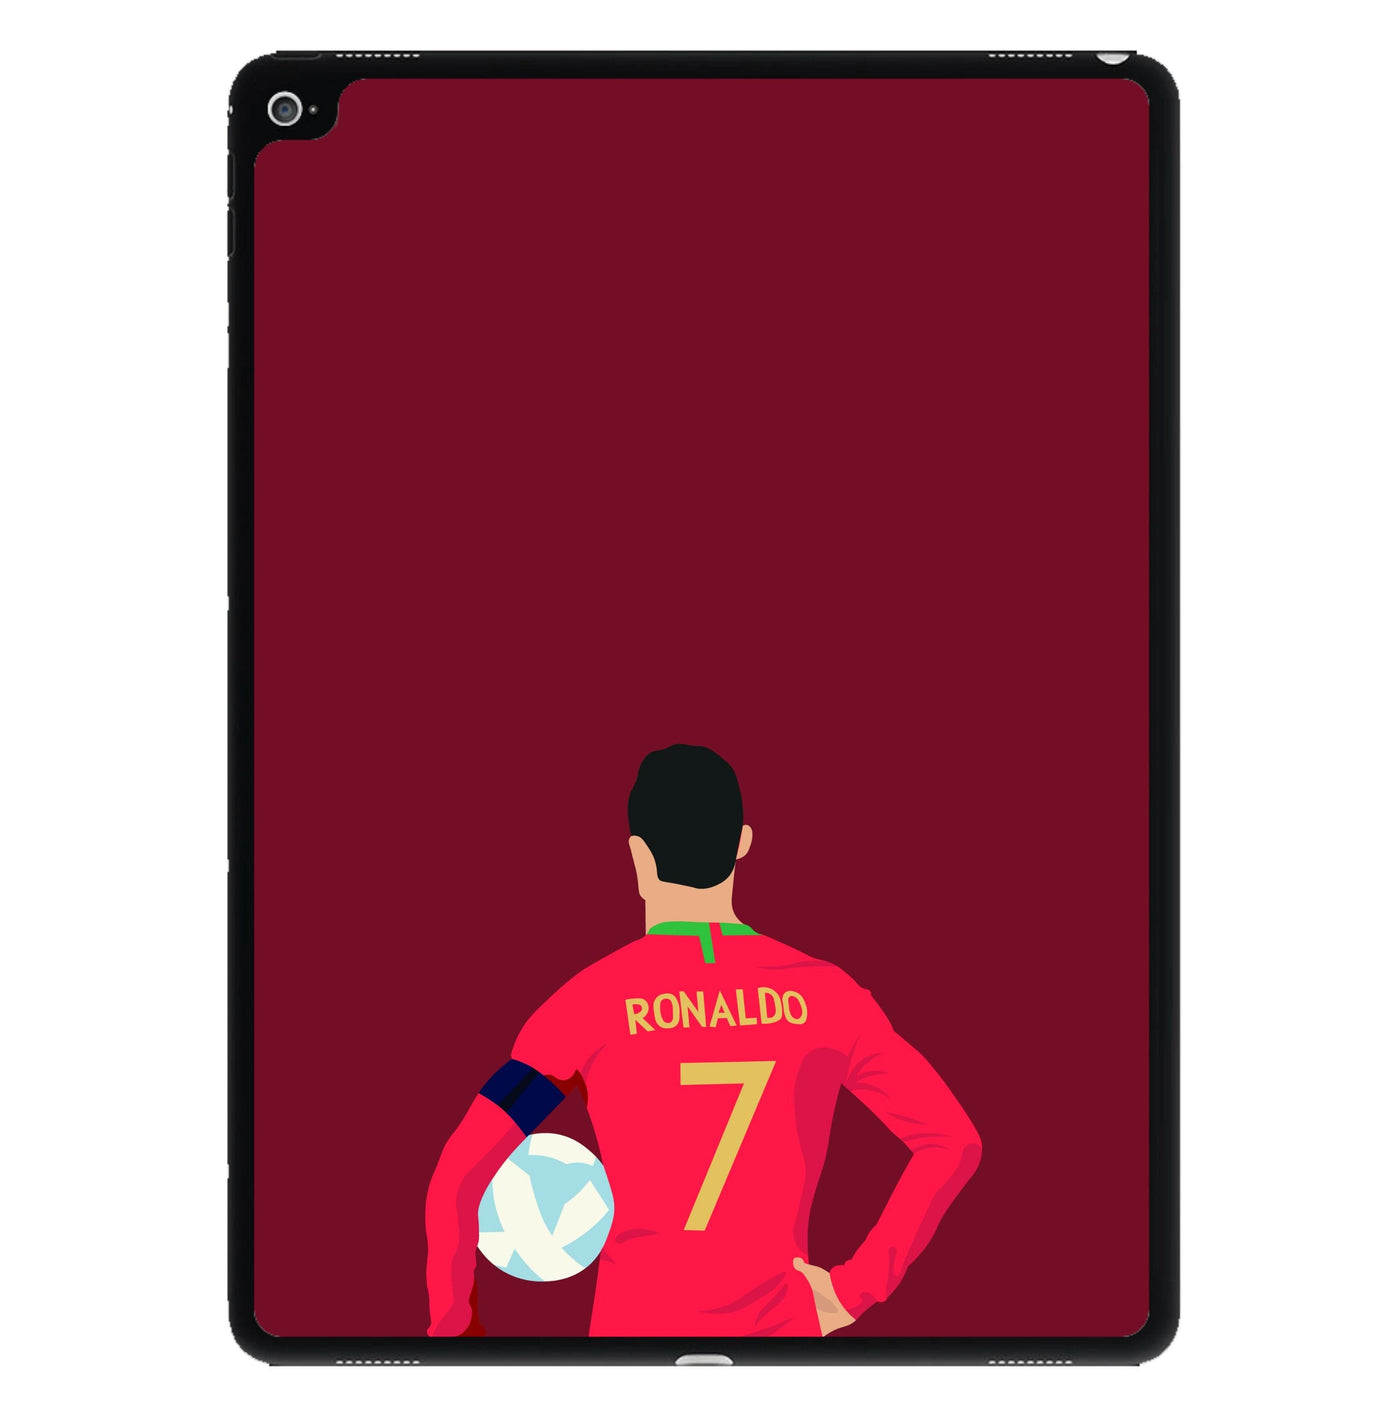 Ronaldo - Football iPad Case